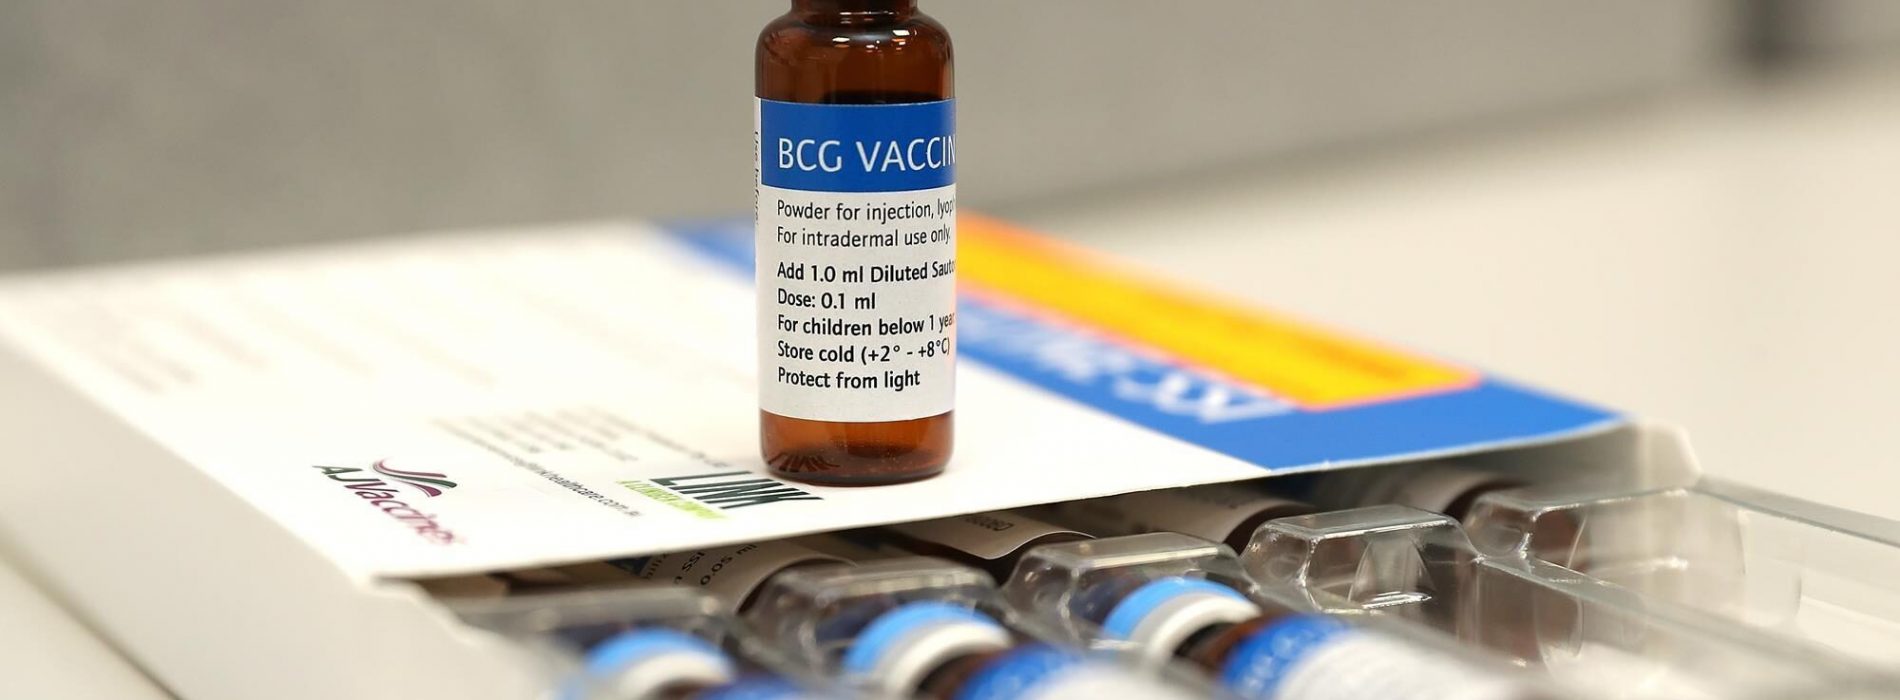 Grote BCG-onderzoeken aan de gang na aanwijzingen dat honderd jaar oud tbc-vaccin een immuunboost biedt tegen Covid-19